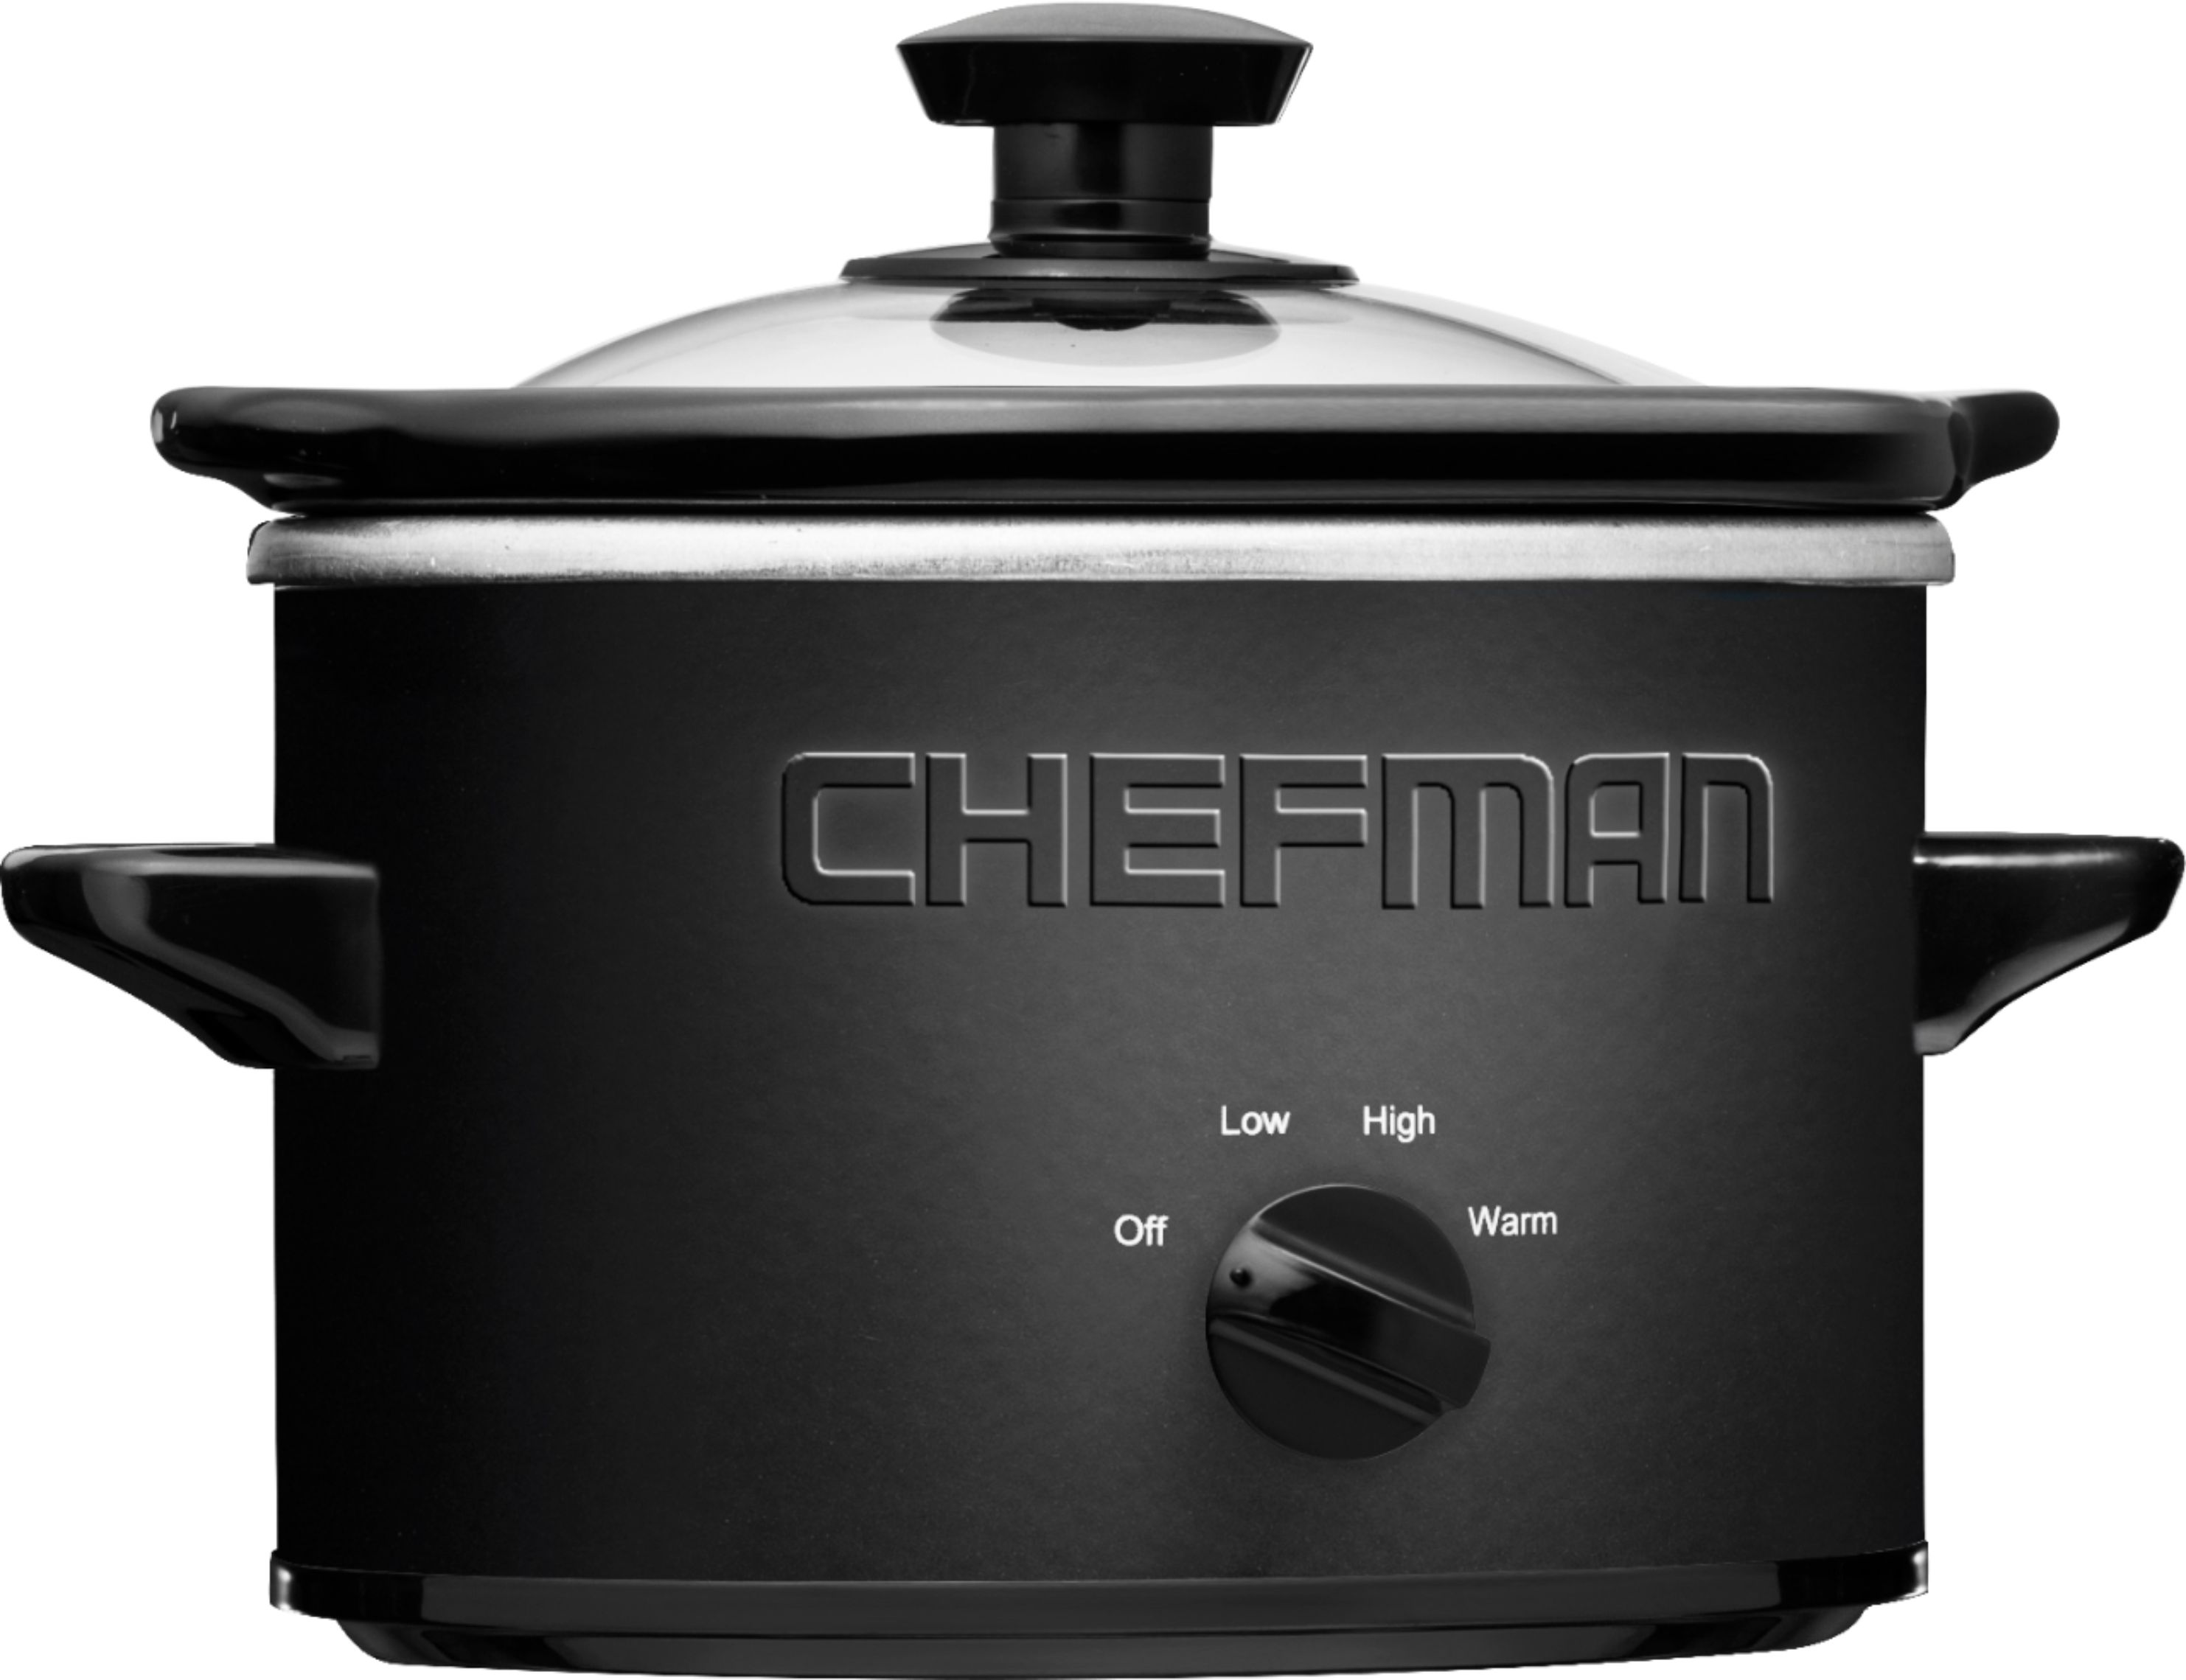 Best Buy: Chefman 2.5-Quart Slow Cooker Stainless Steel/Black RJ15